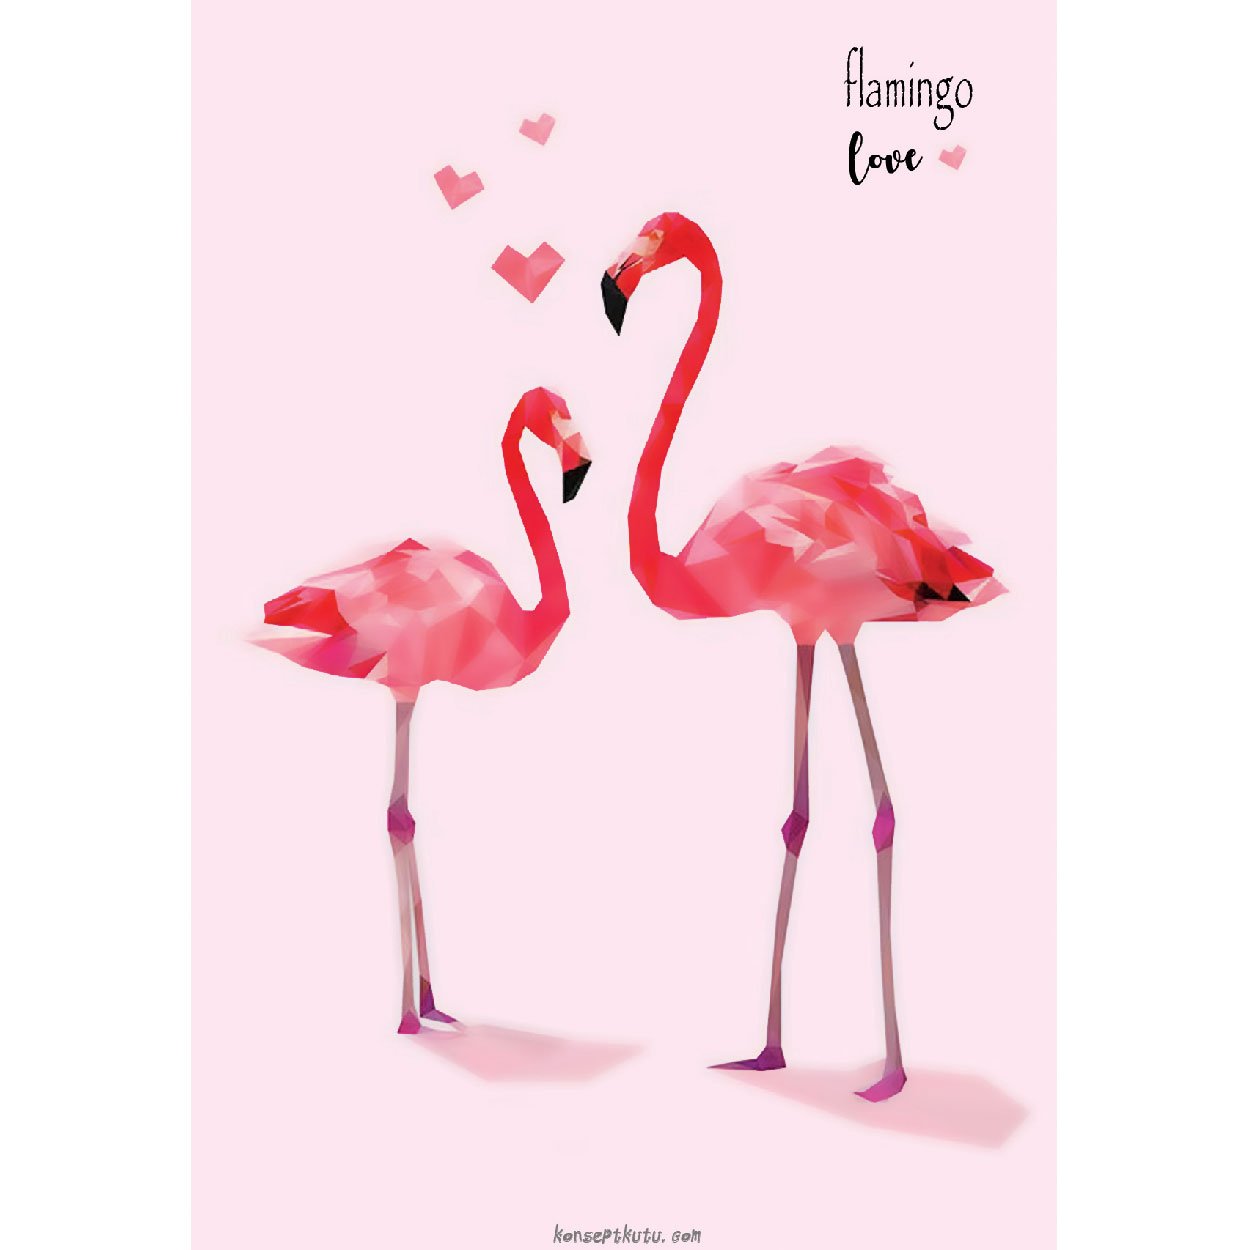 649722-flamingo-love-motto-karti